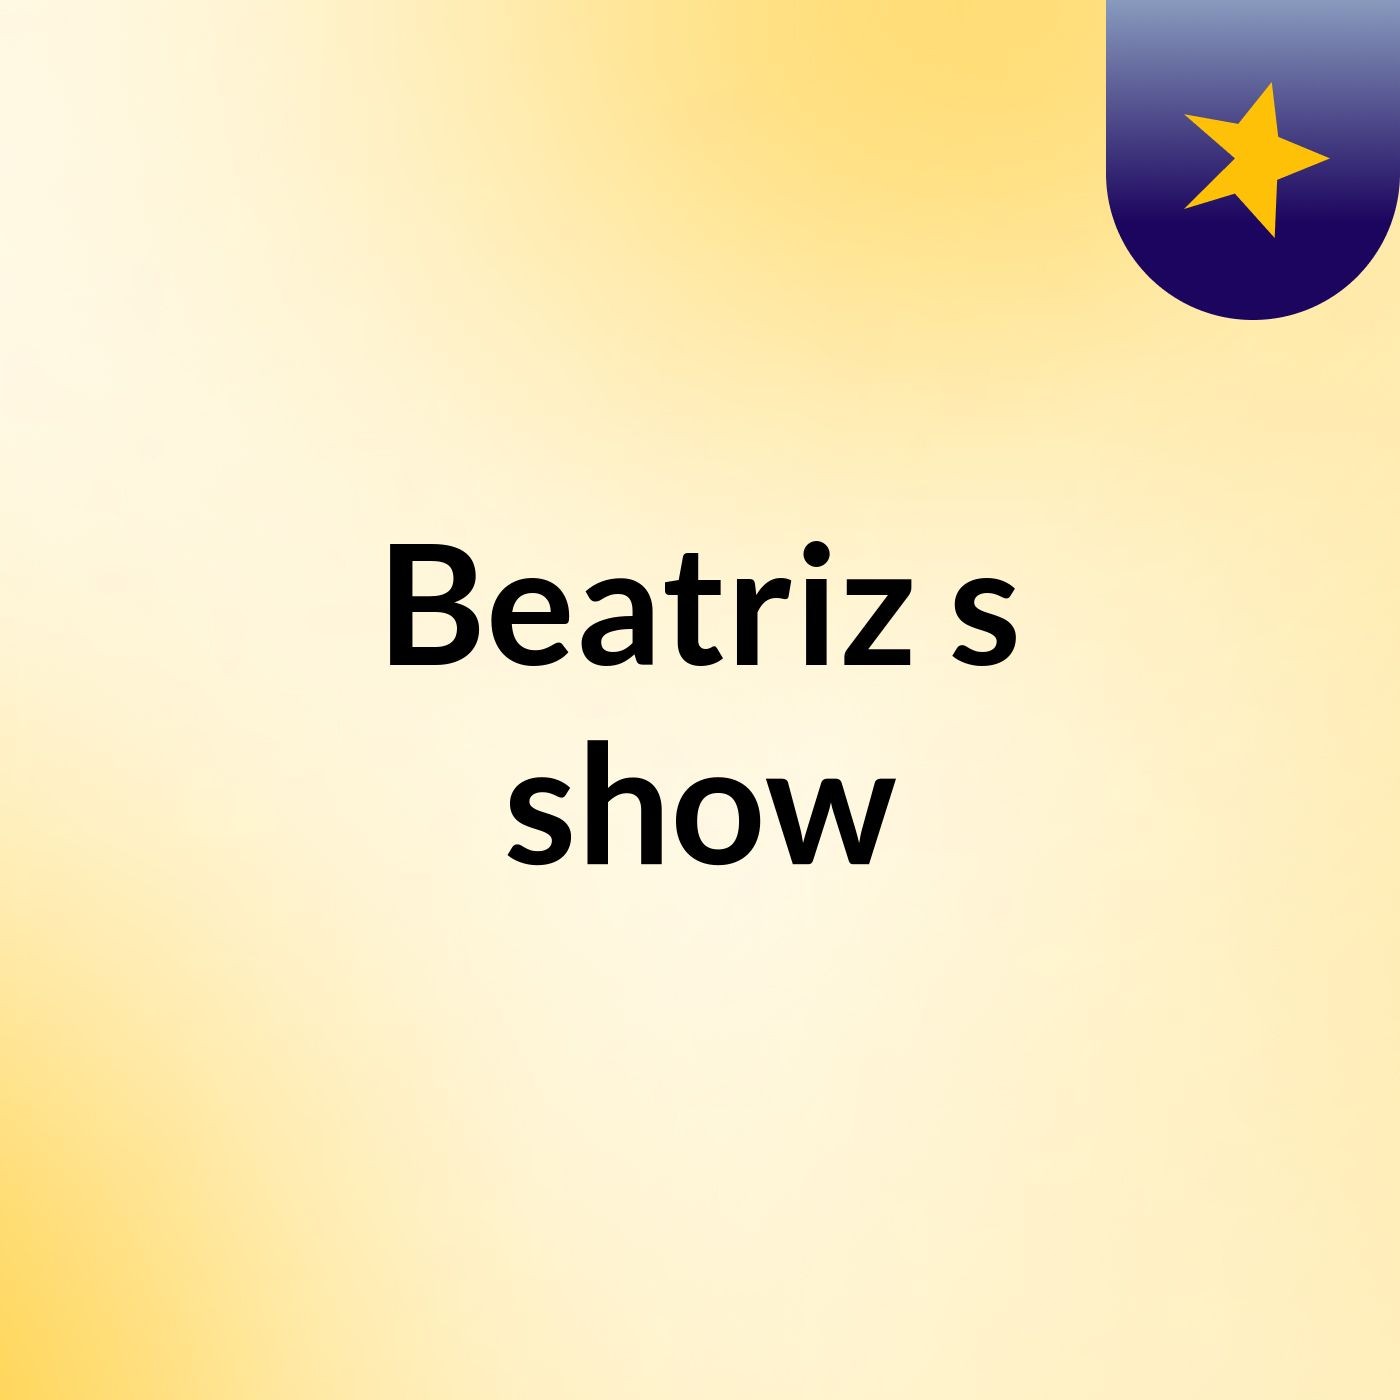 Beatriz's show